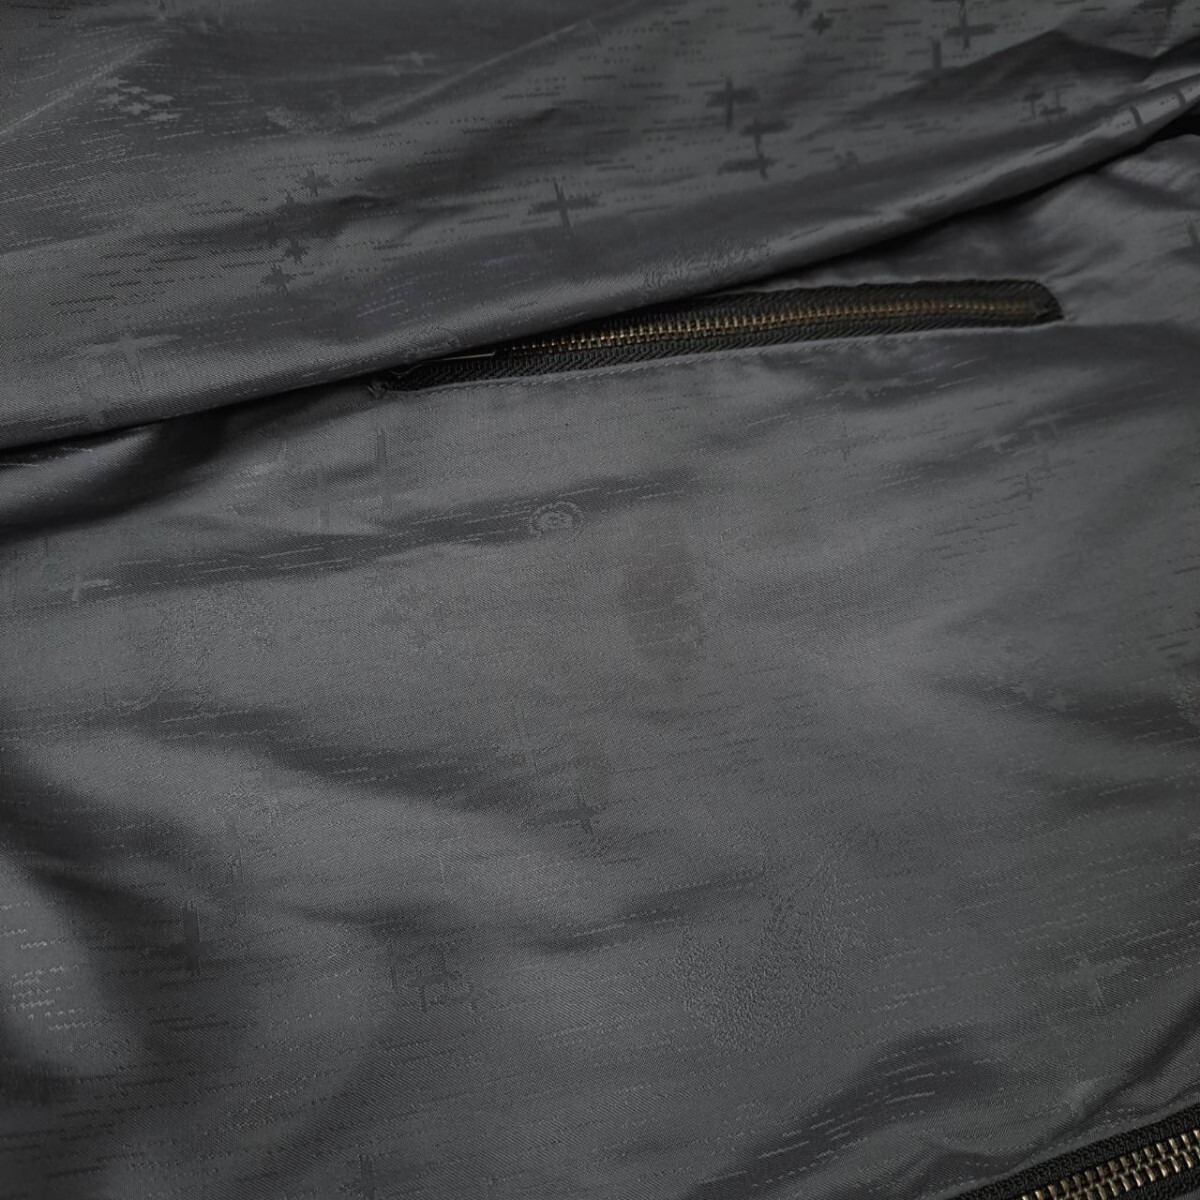 Onitsuka Tiger オニツカタイガー パーカー 薄手 ウィンドブレーカー サイズL フード内蔵 グレー ロゴ刺繍 上着 アウター レディース Y054_画像8